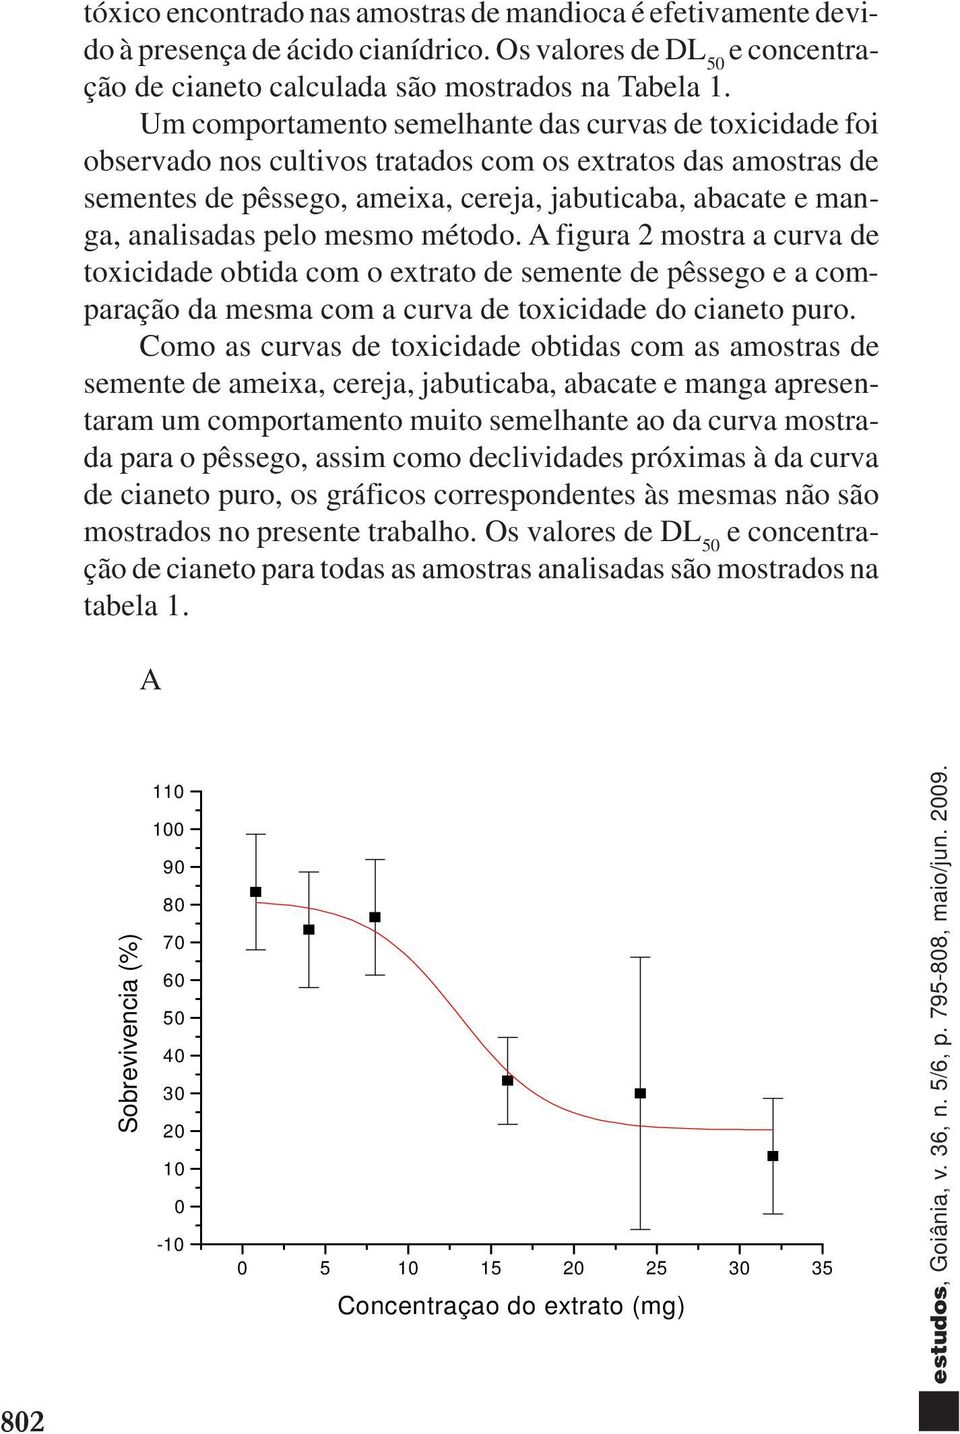 pelo mesmo método. A figura 2 mostra a curva de toxicidade obtida com o extrato de semente de pêssego e a comparação da mesma com a curva de toxicidade do cianeto puro.